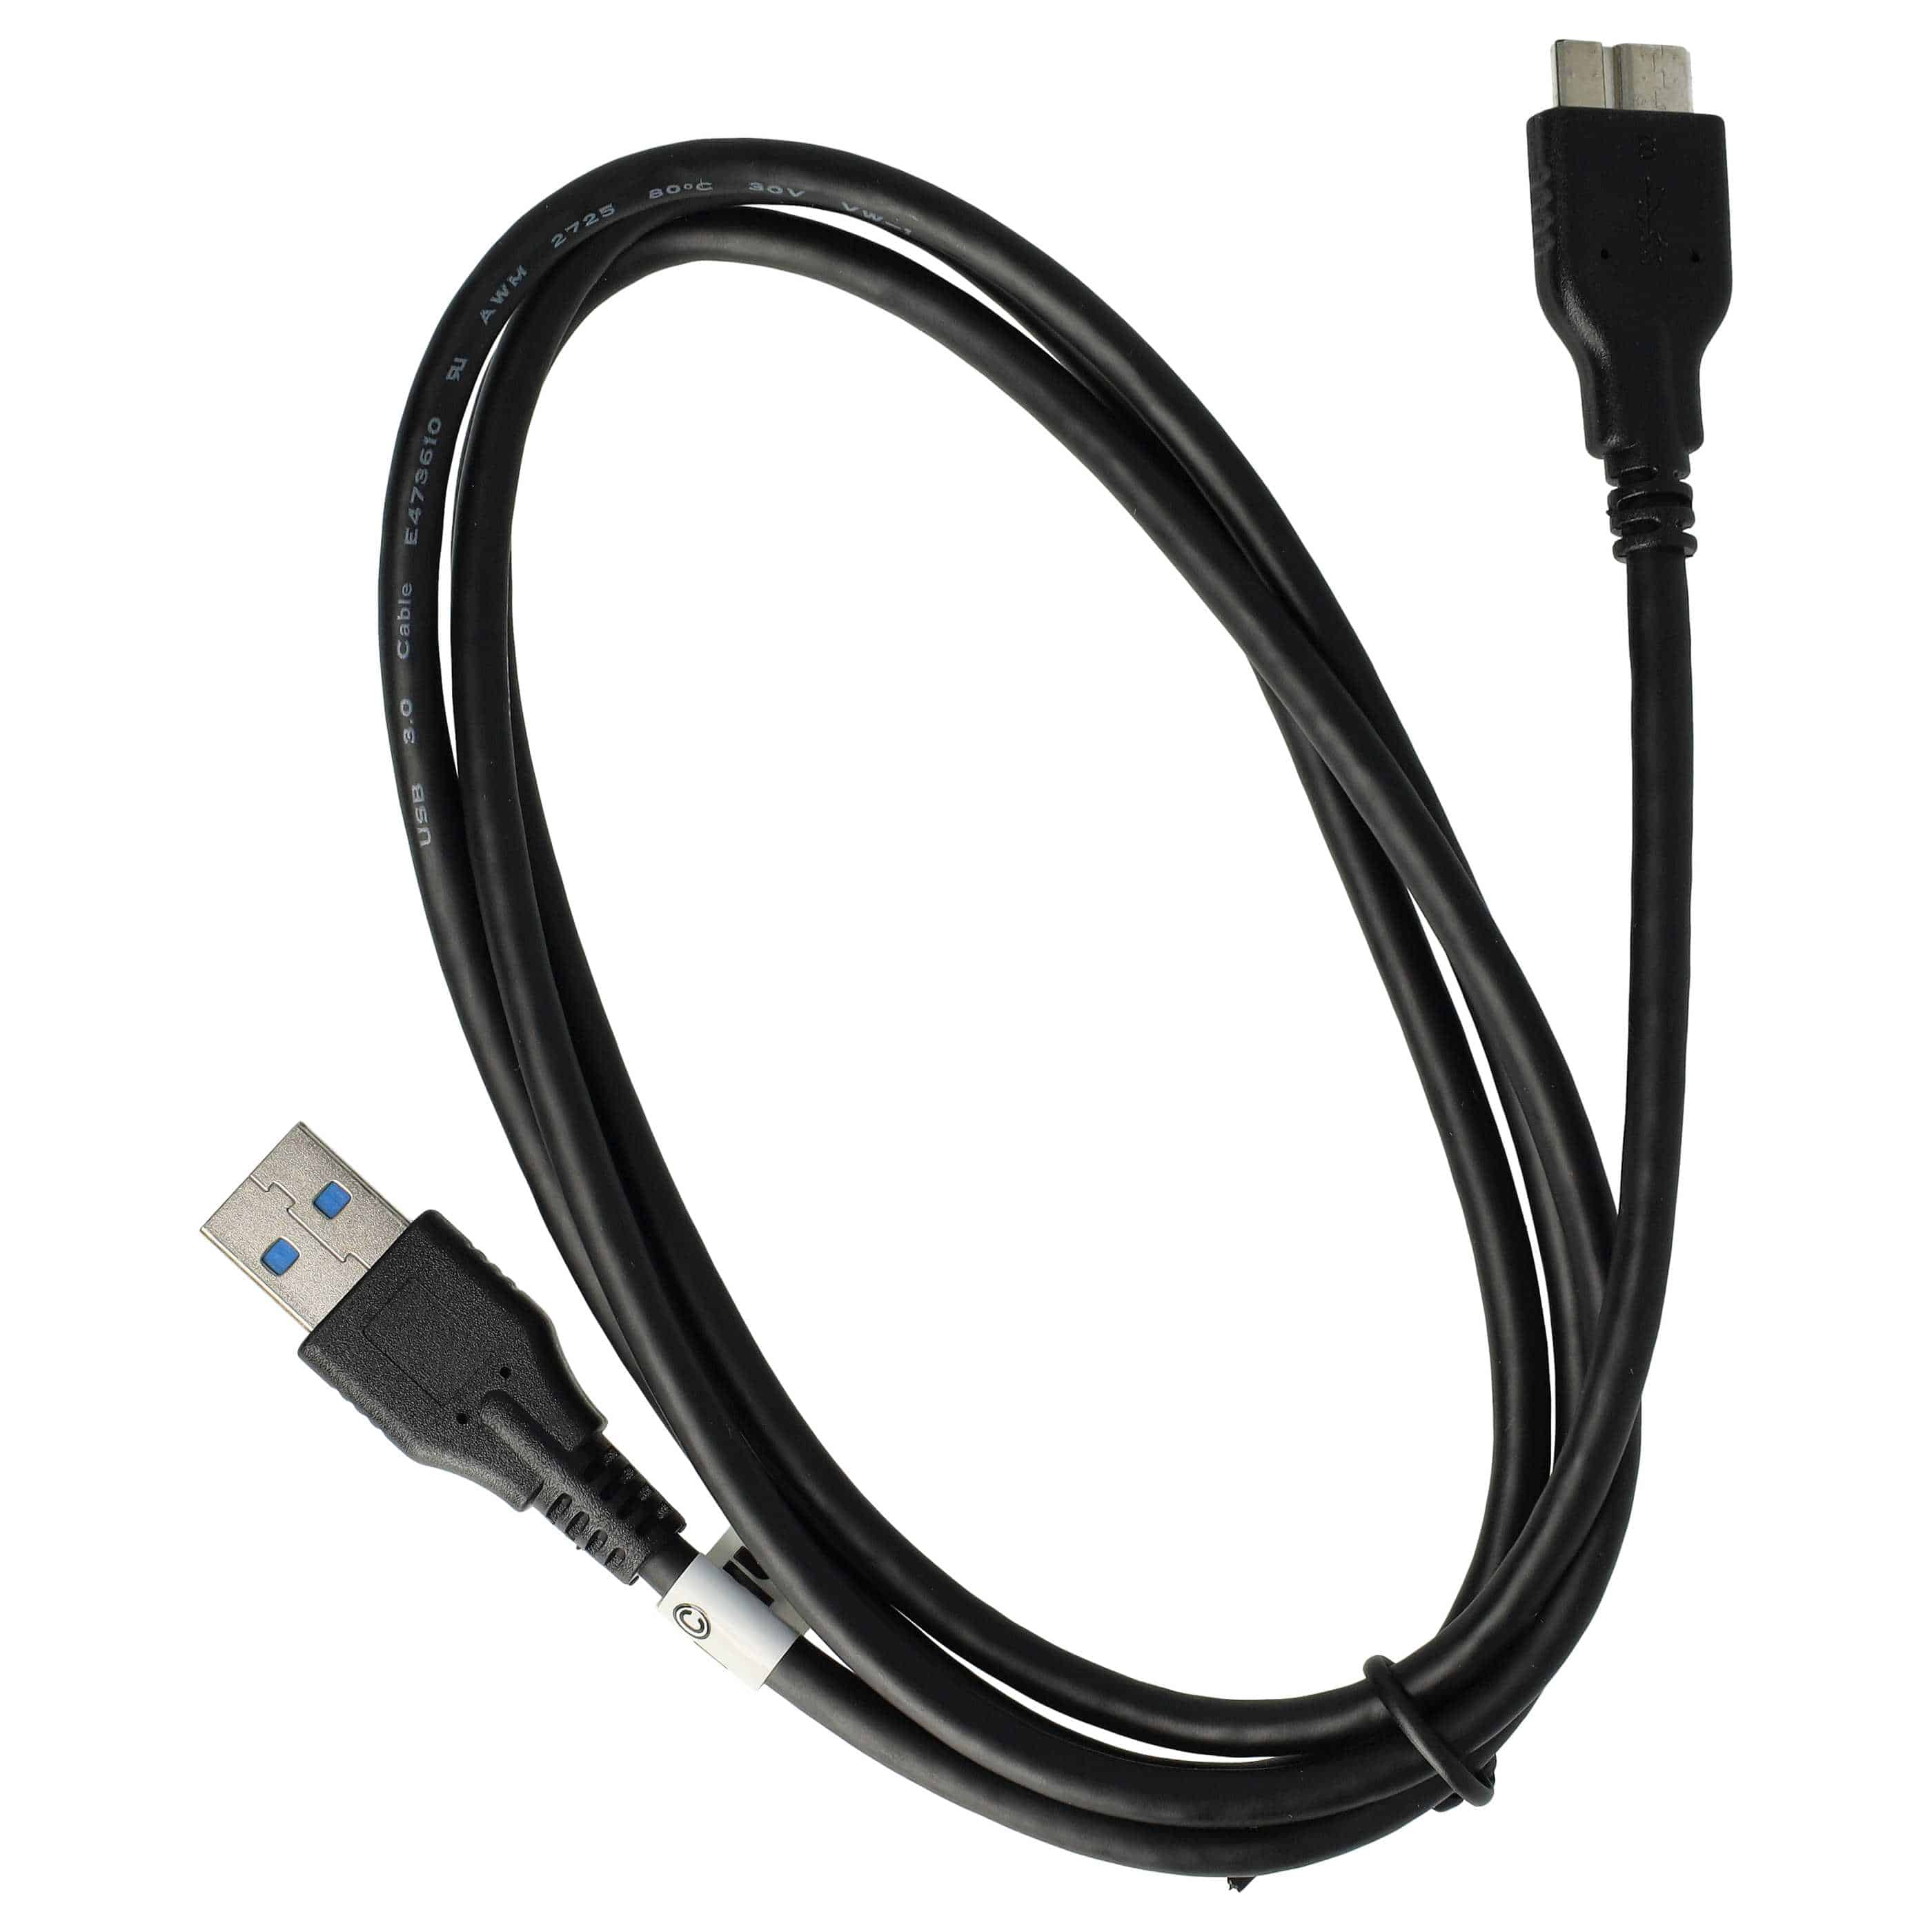 Cable de datos USB reemplaza Nikon UC-E14, UC-E22 para cámaras Nikon - 150 cm